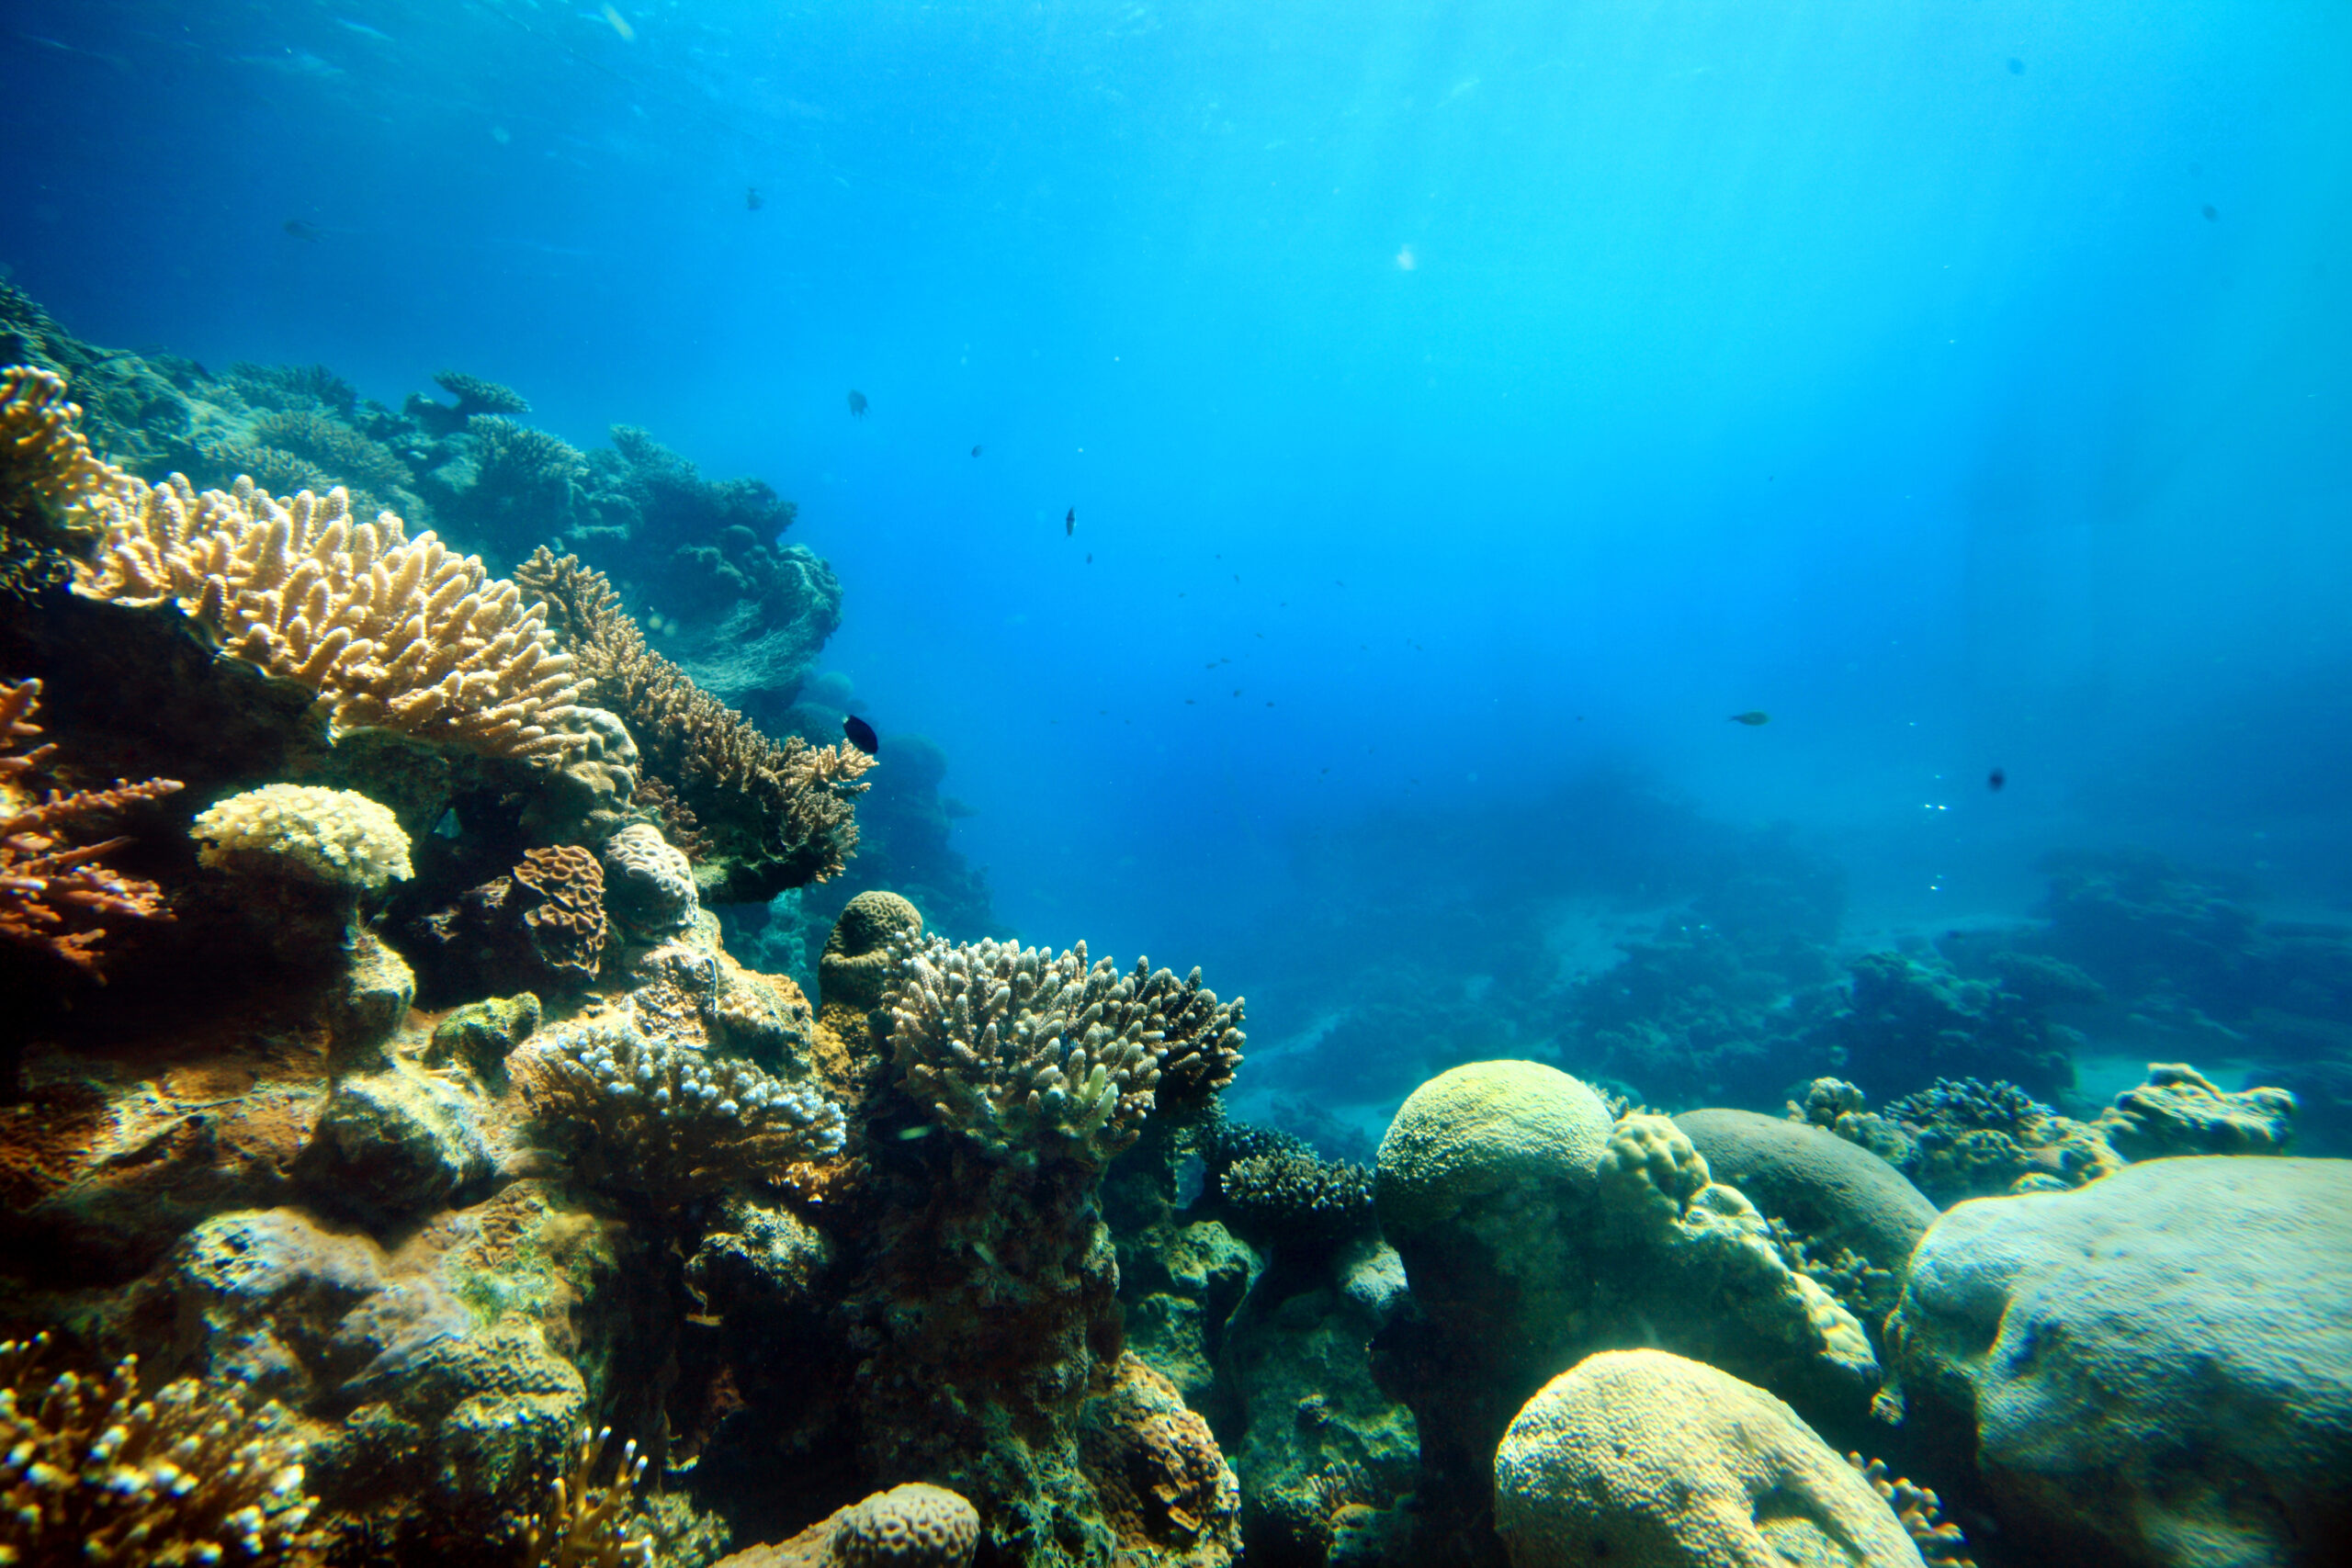 Dypt nede i havet. Foran i venstre hjørne er det koraller, de strekker seg på tvers av bildet mot høyre. Havet er litt lysere øverst i bildet, der det kan se ut som lys skinner ned.